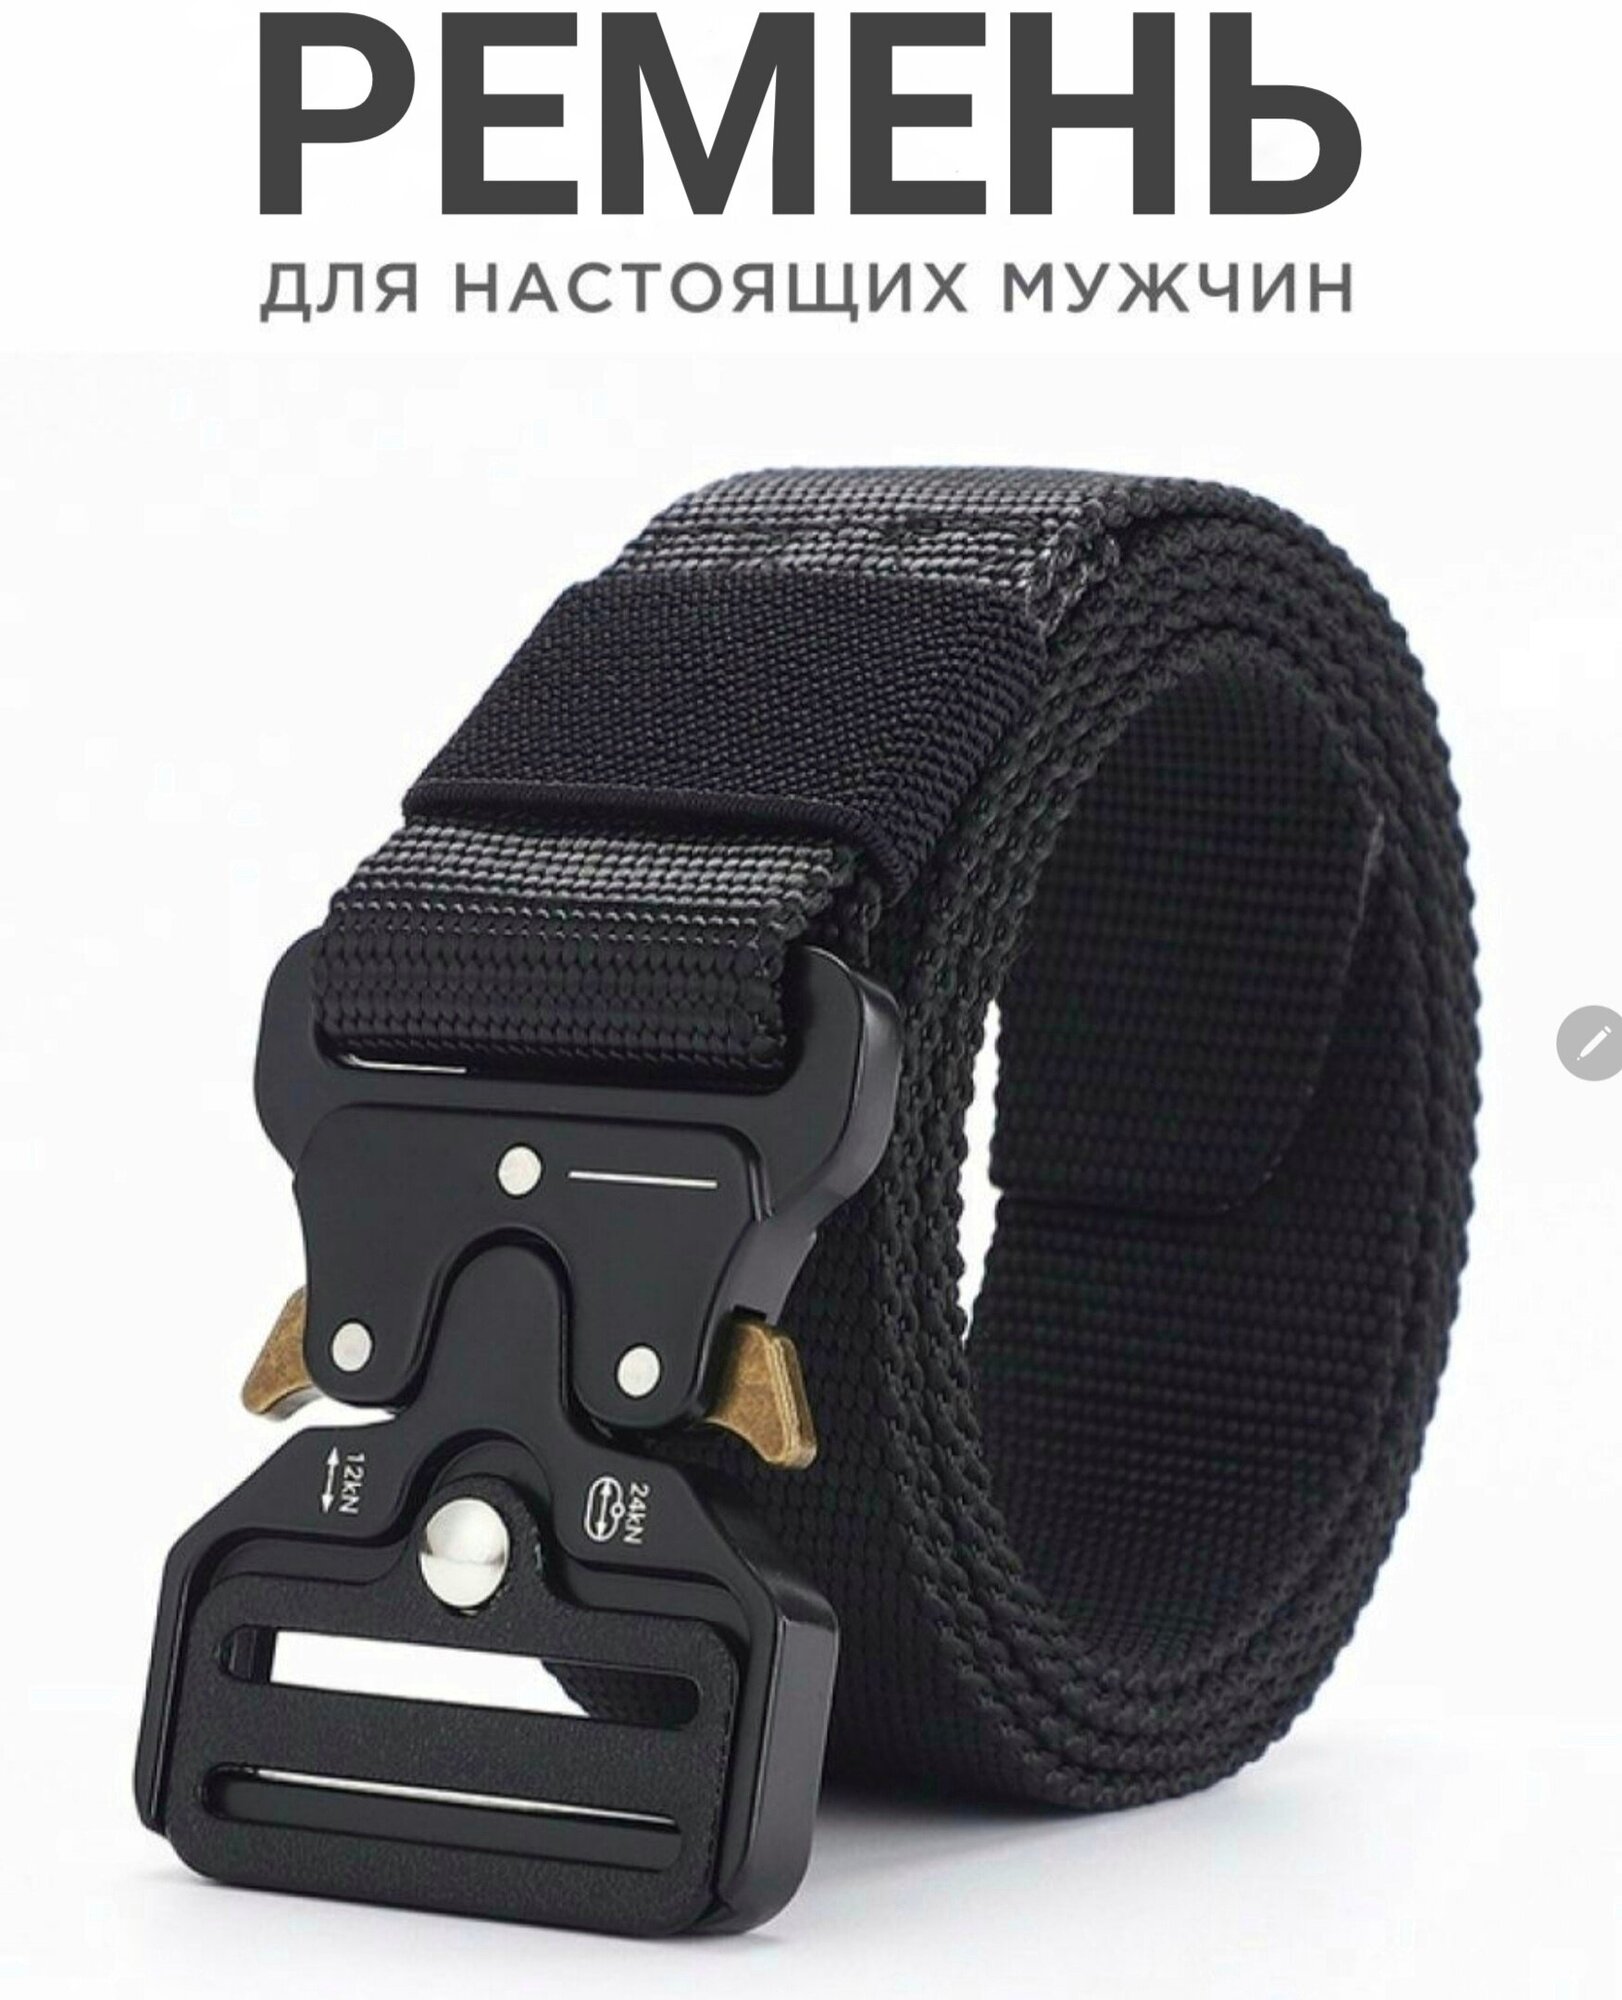 Ремень текстиль, размер 2, длина 125 см., черный — купить винтернет-магазине по низкой цене на Яндекс Маркете